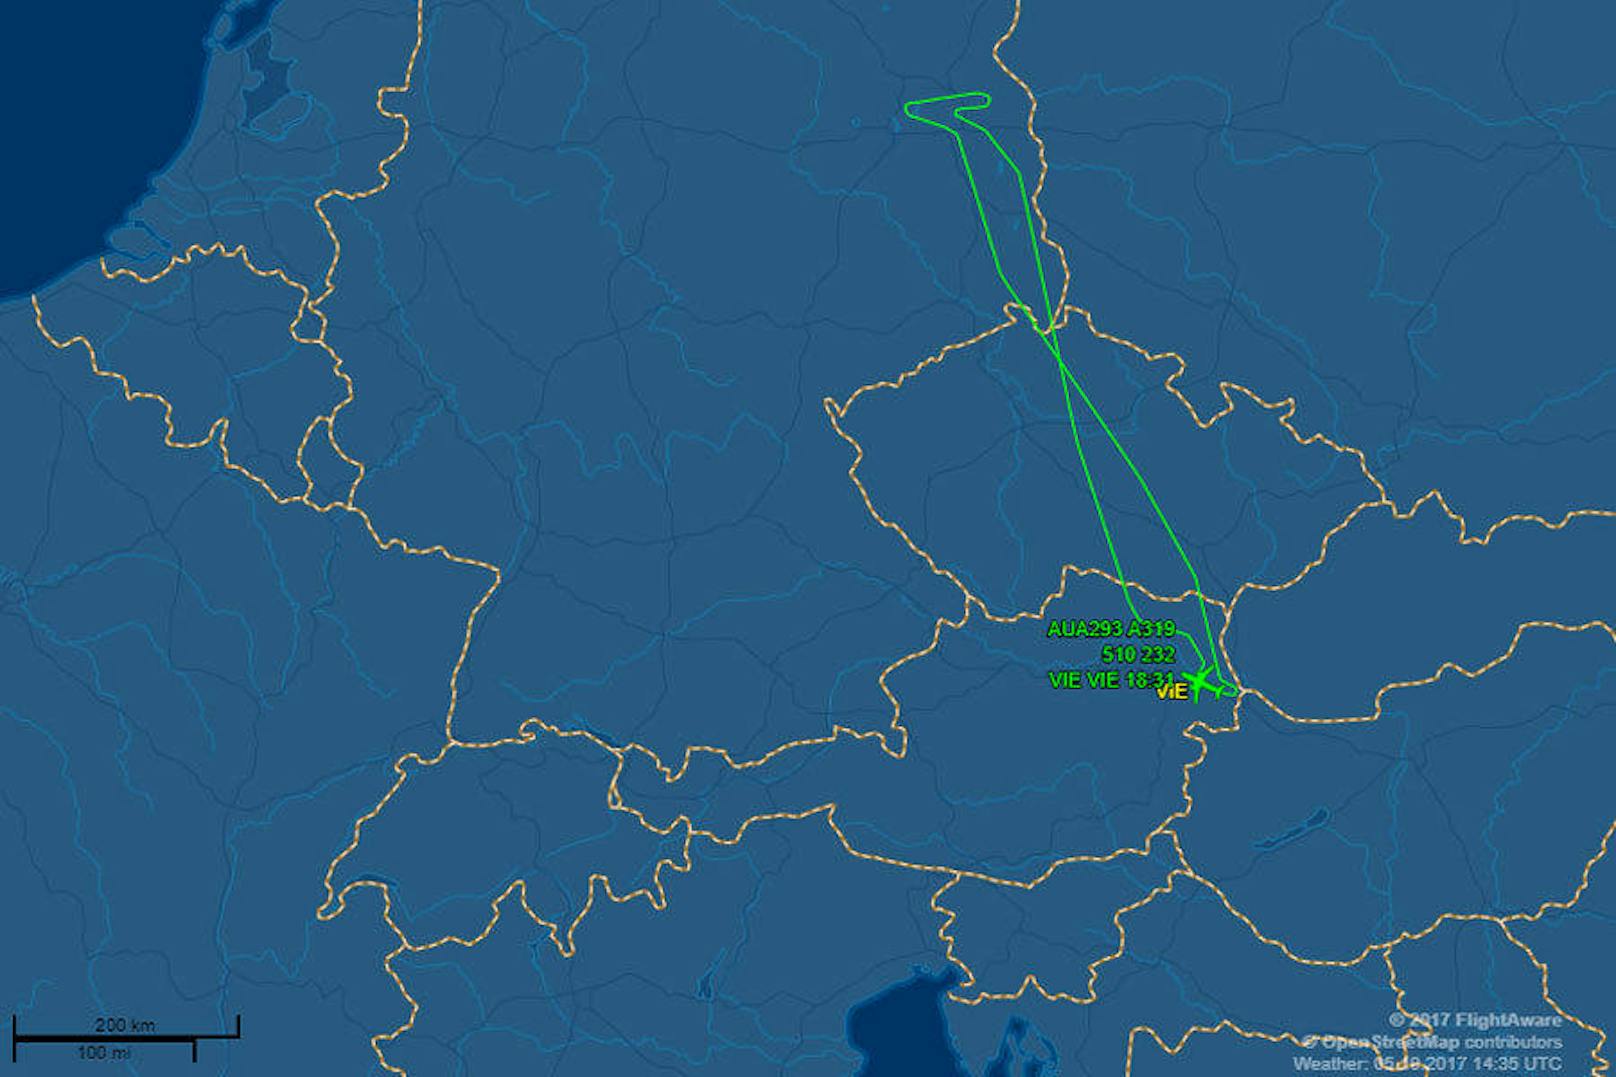 Sturmtief "Xavier" hat am Donnerstag die Landung einer AUA-Maschine in Berlin unmöglich gemacht. Der Pilot entschied wieder nach Wien zurückzufliegen (6. Oktober).